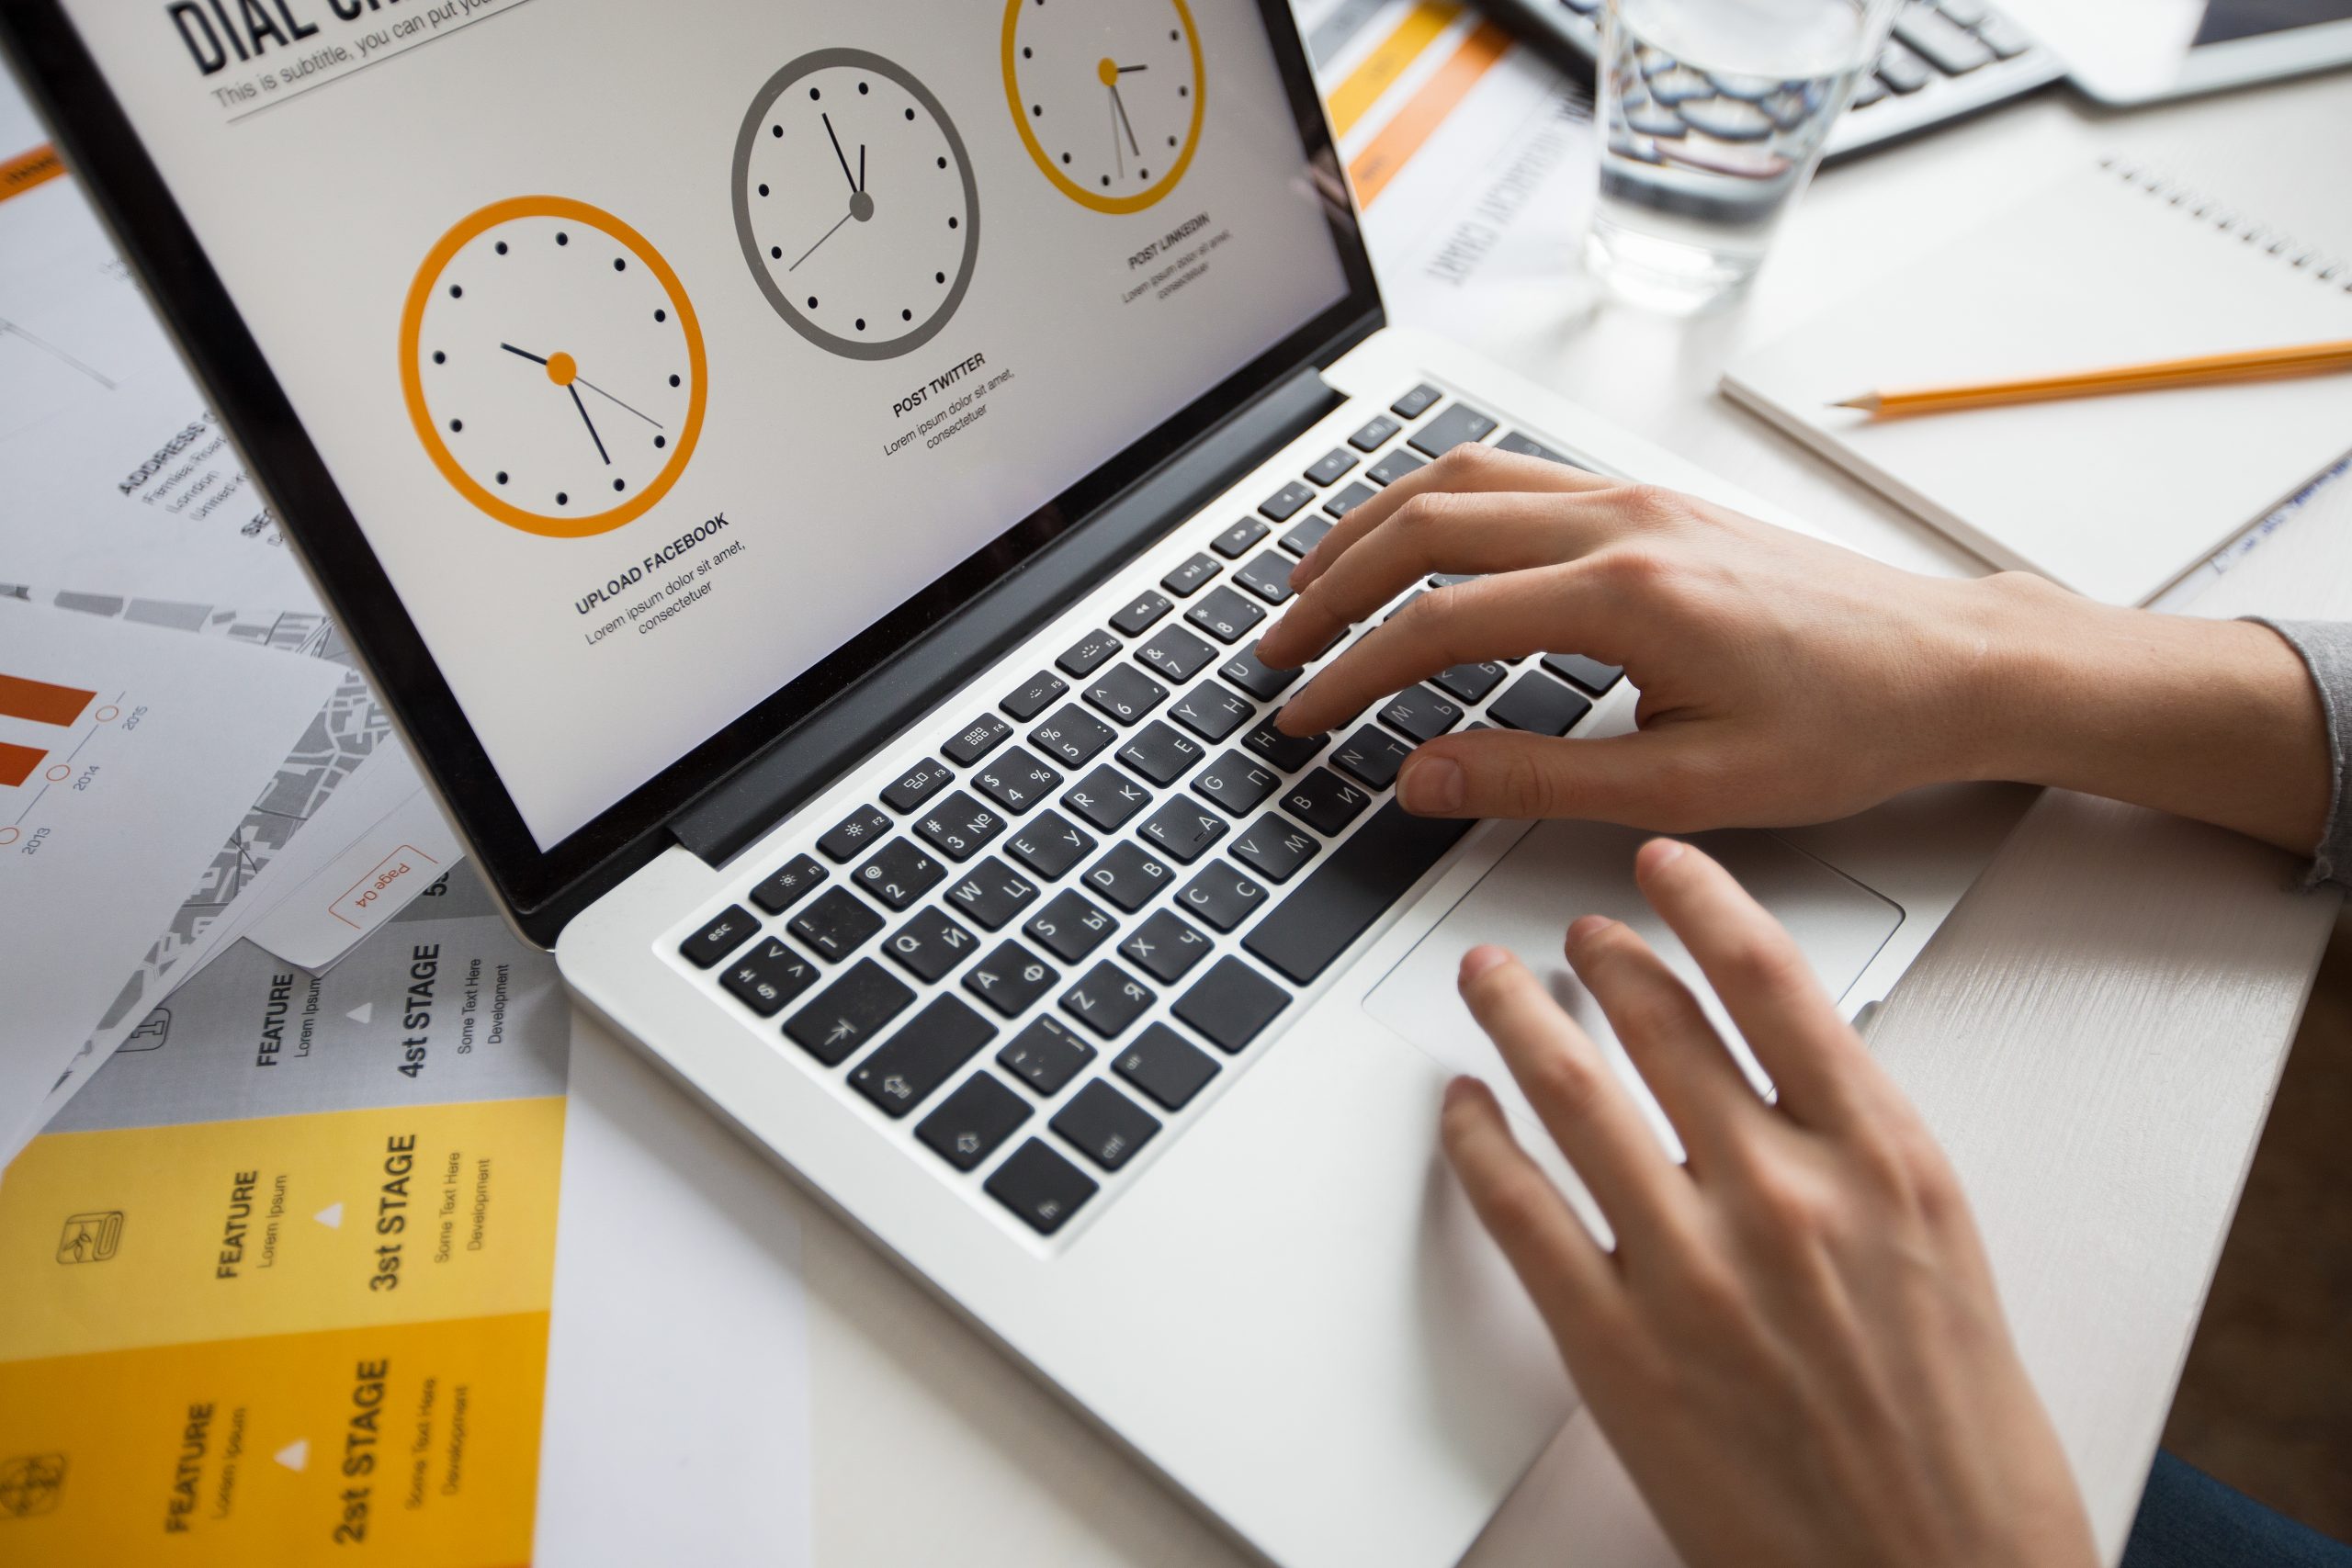 El uso de formularios “Low Code” puede ayudarlos a optimizar el tiempo en las operaciones de su empresa